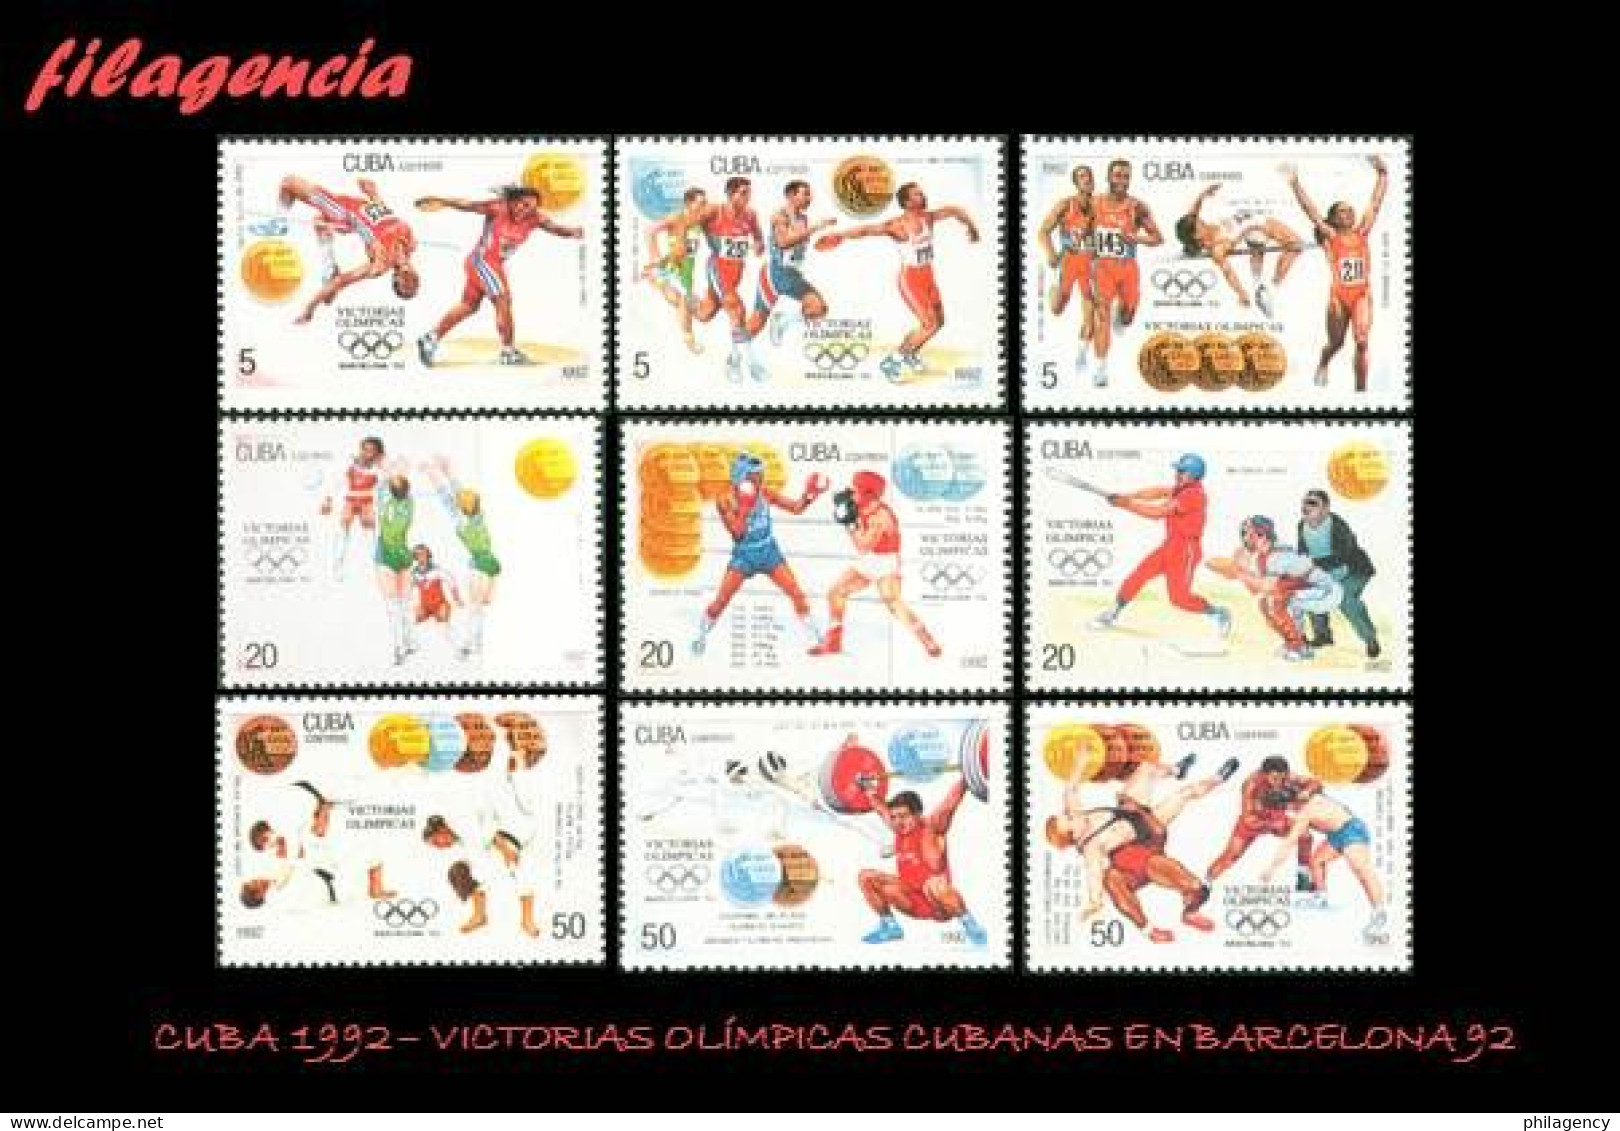 CUBA MINT. 1992-17 VICTORIAS OLÍMPICAS CUBANAS EN BARCELONA 92 - Unused Stamps